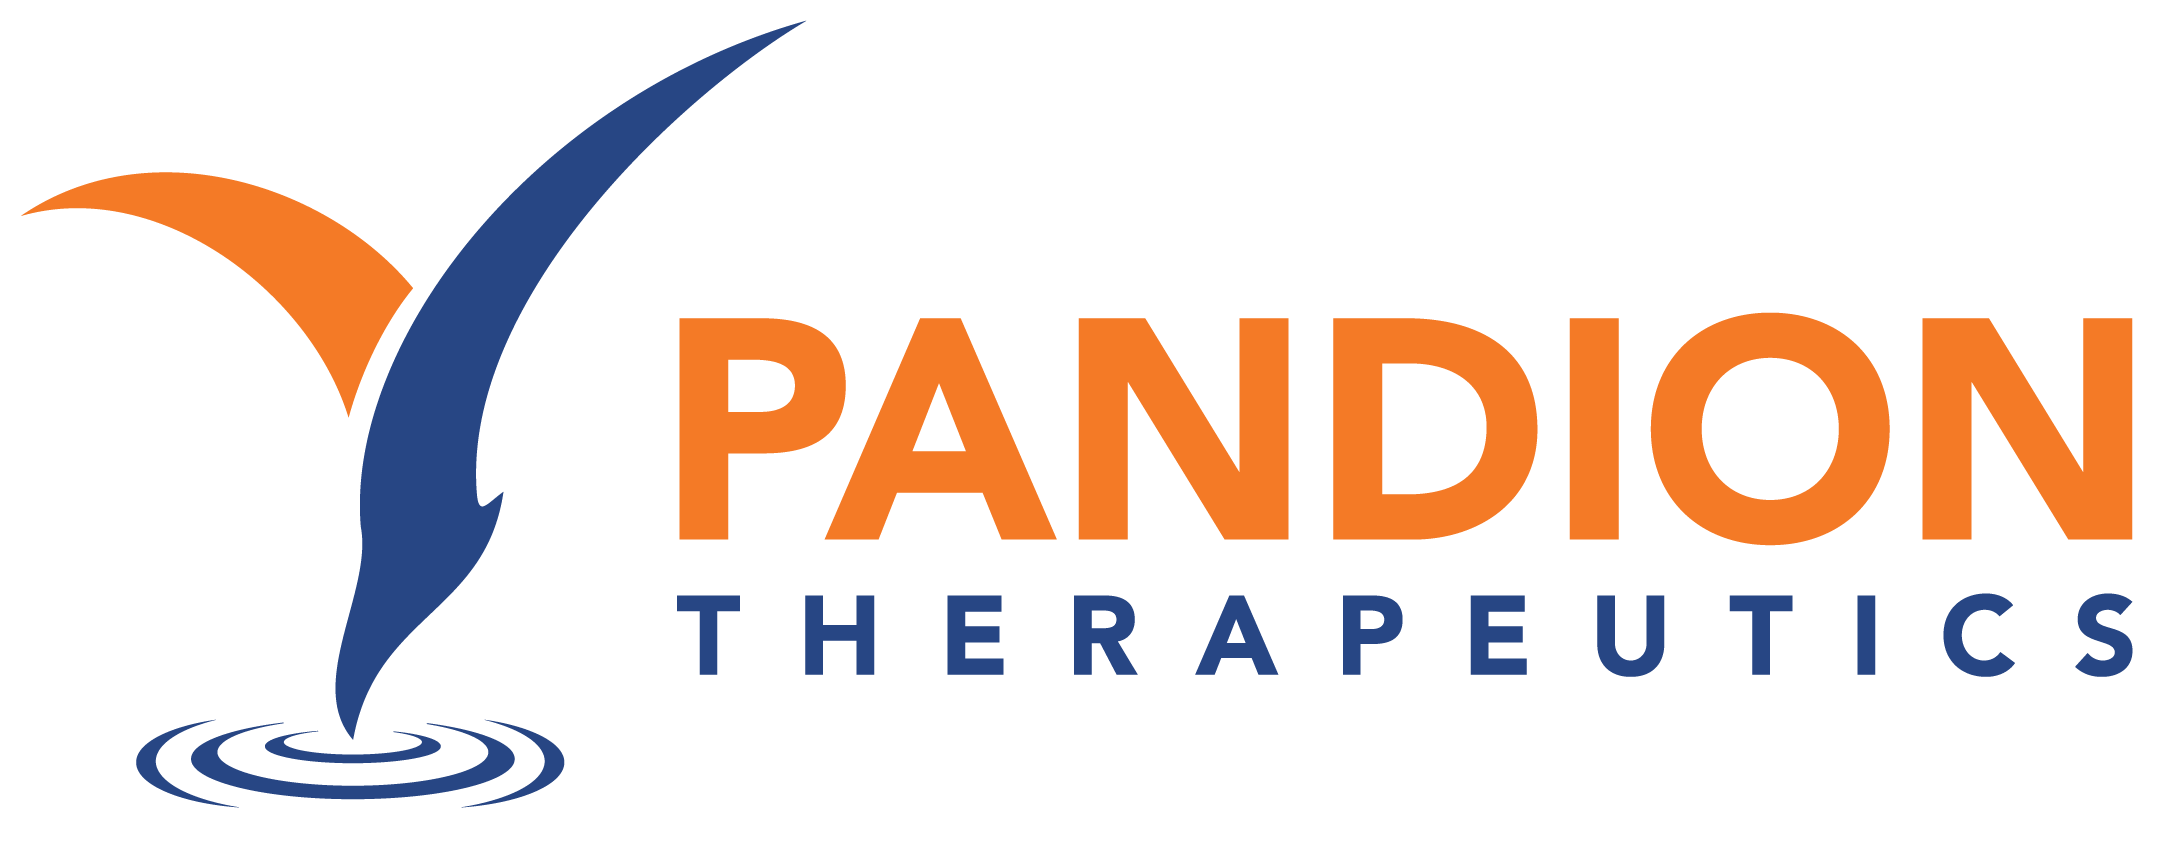 pandion-logo.png